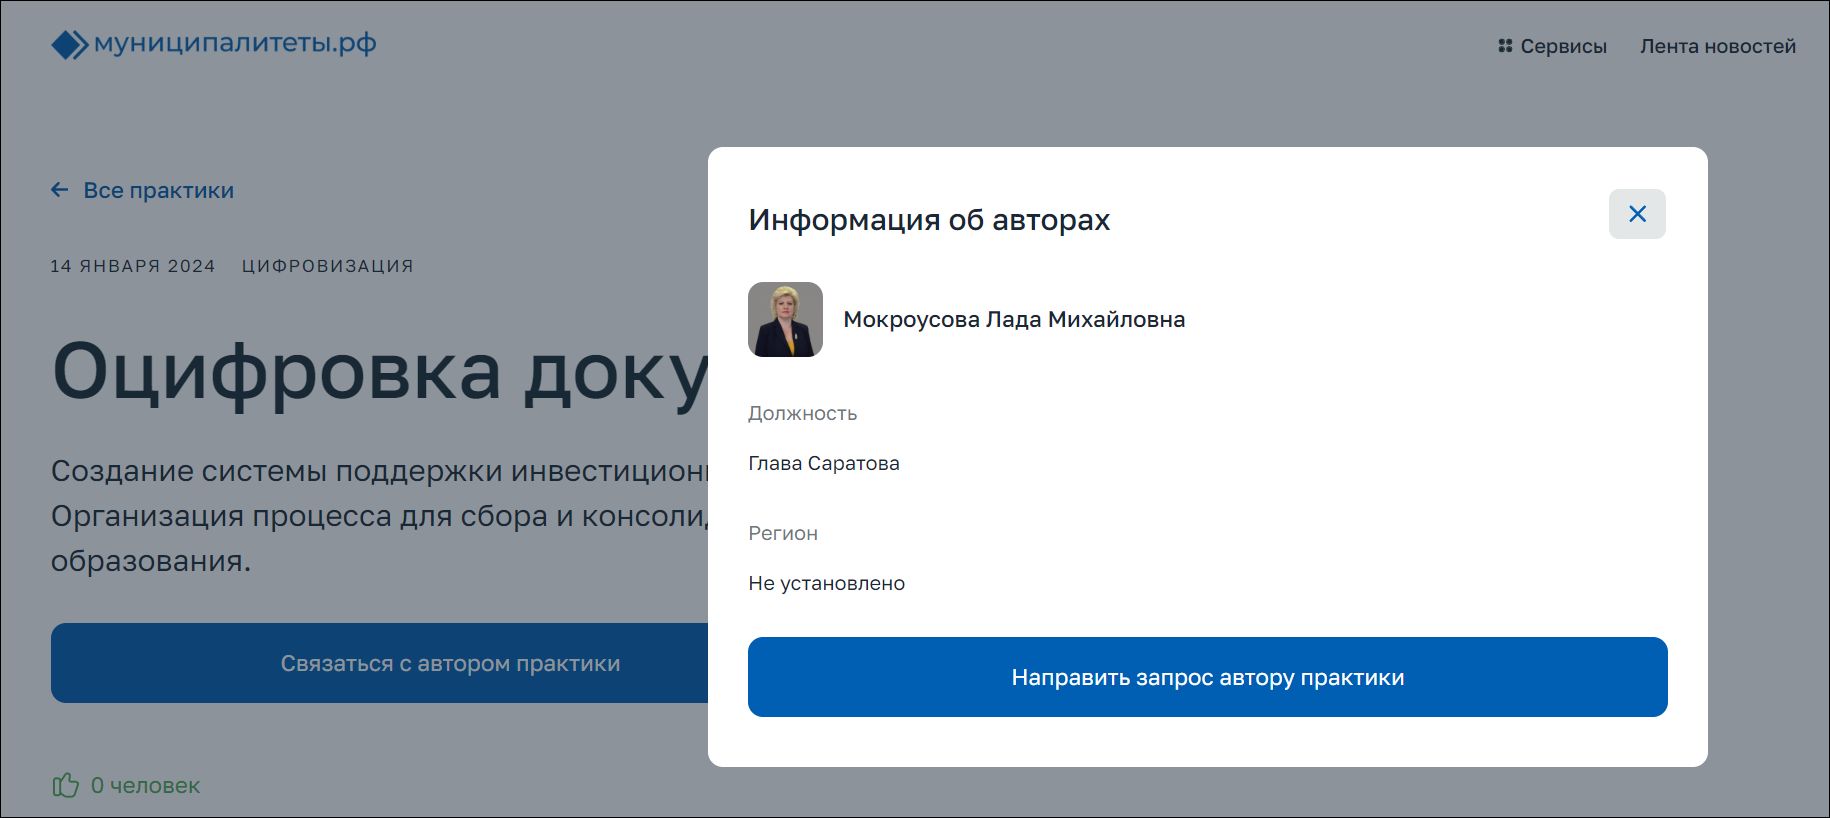  Скриншот одной из страниц сайта Муниципалитеты.РФ